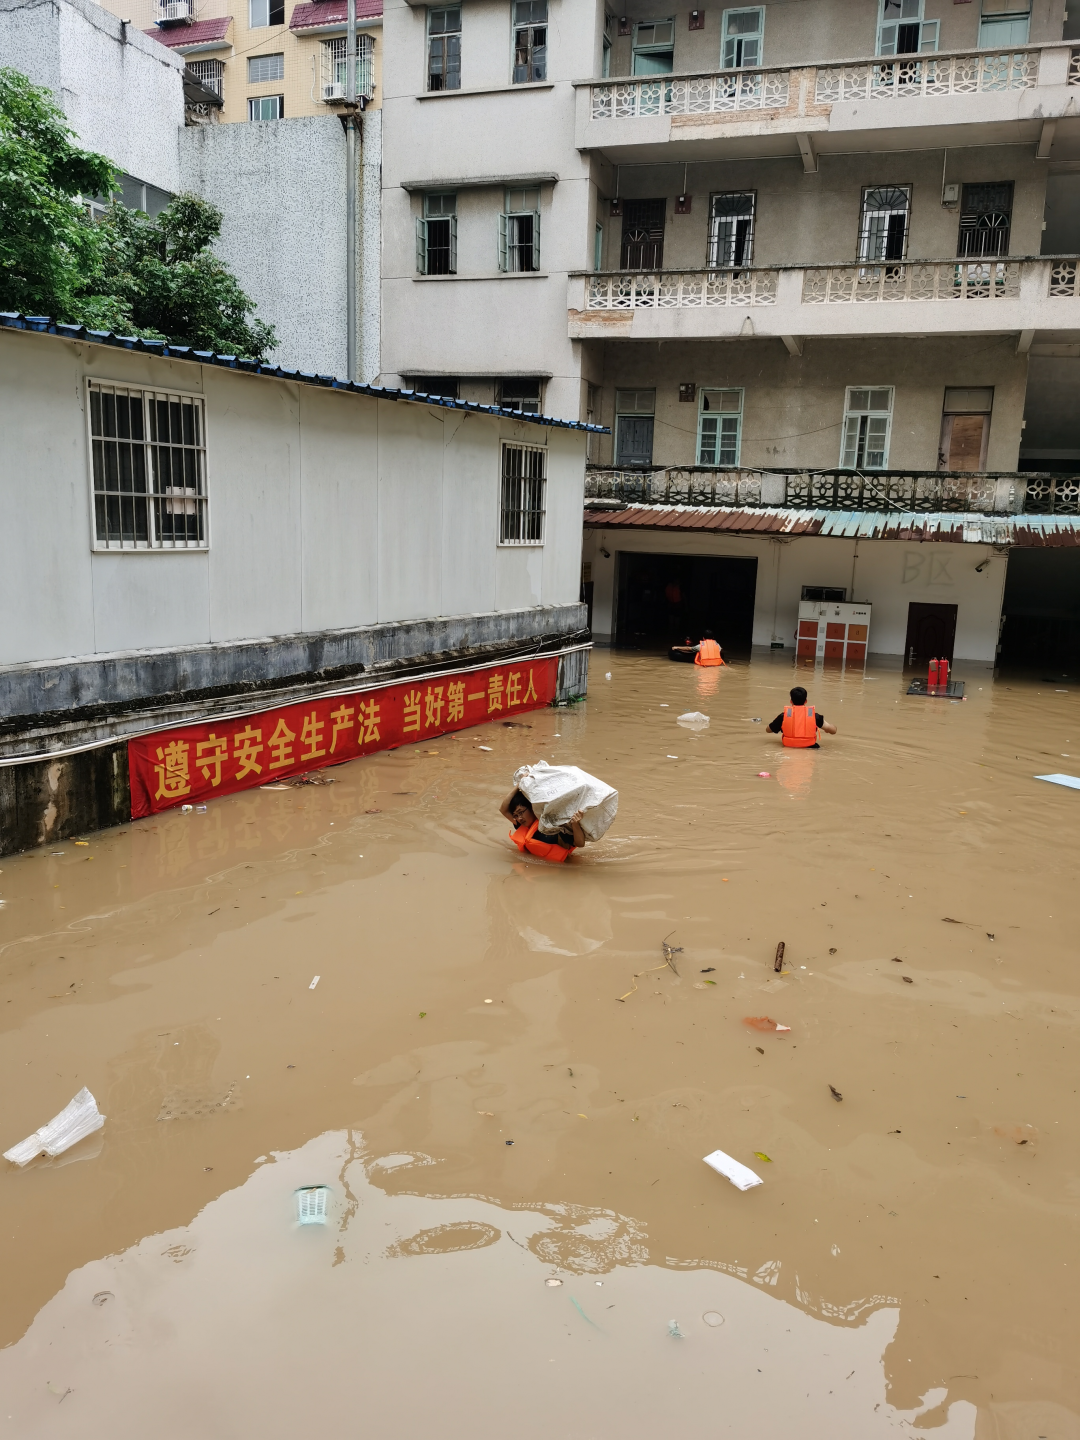 深圳暴雨内涝致公交车内20名乘客被困 - 中国日报网